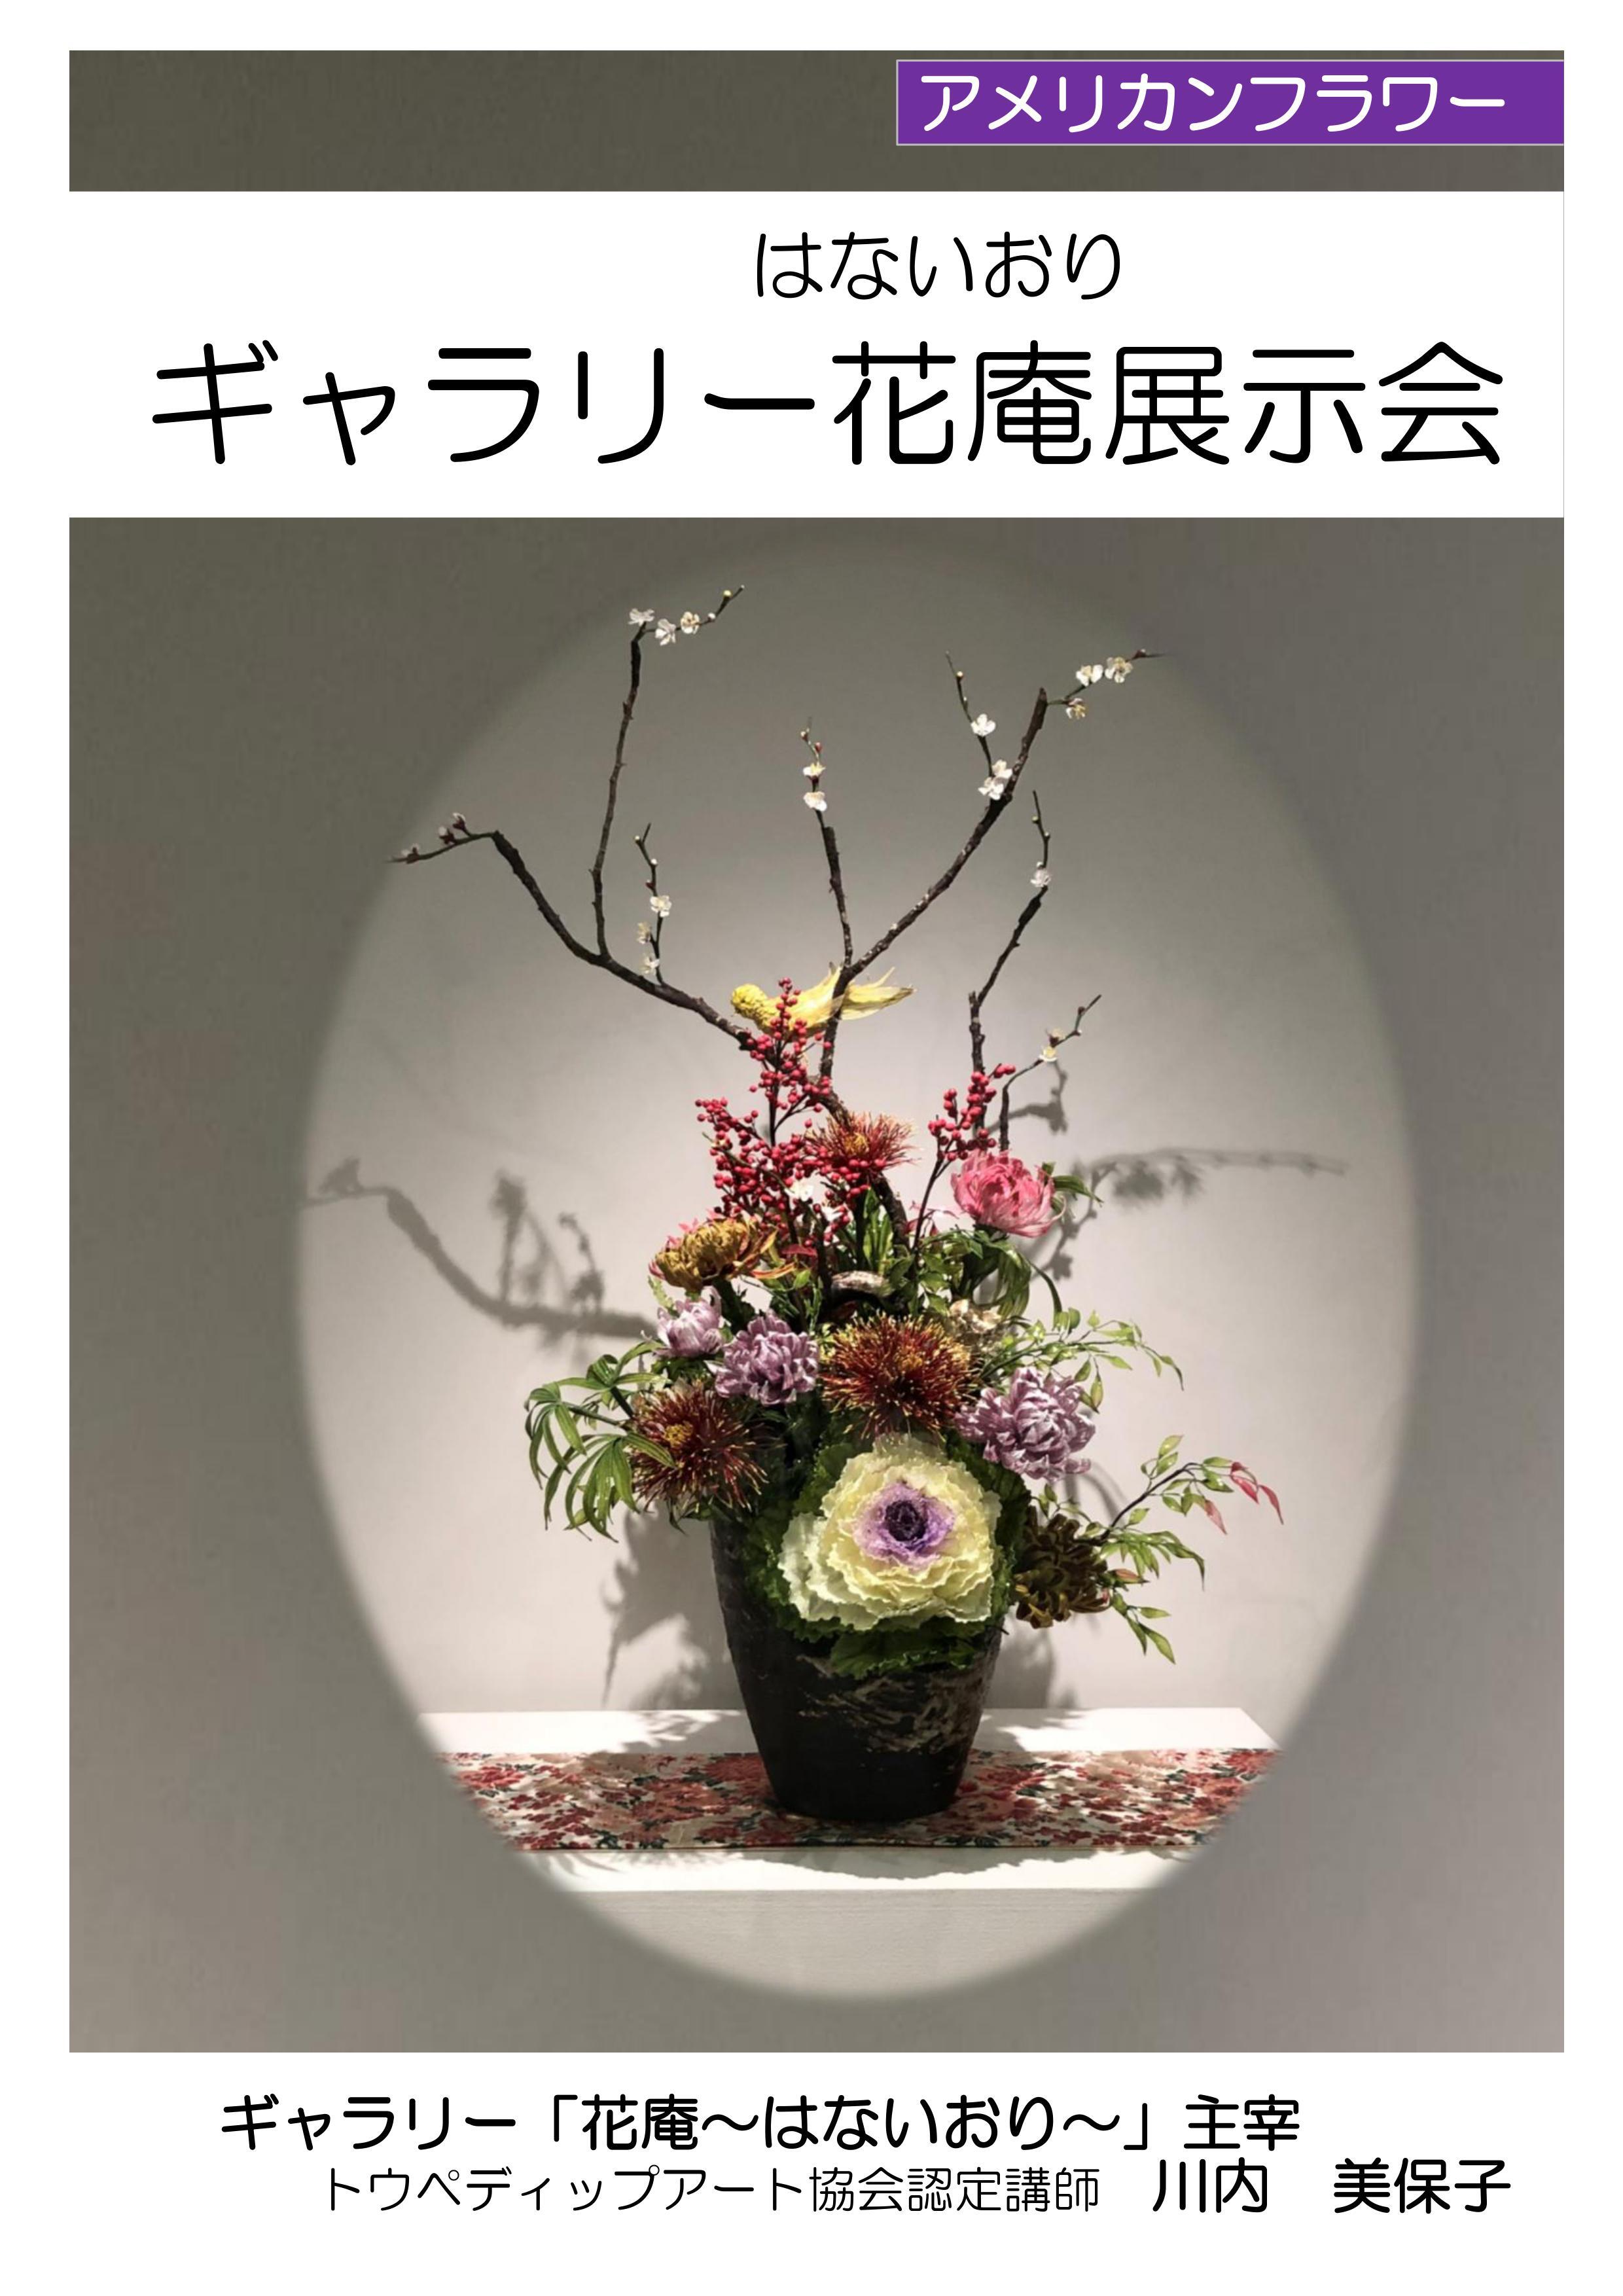 【展示】ギャラリー「花庵～はないおり～」展示会の画像